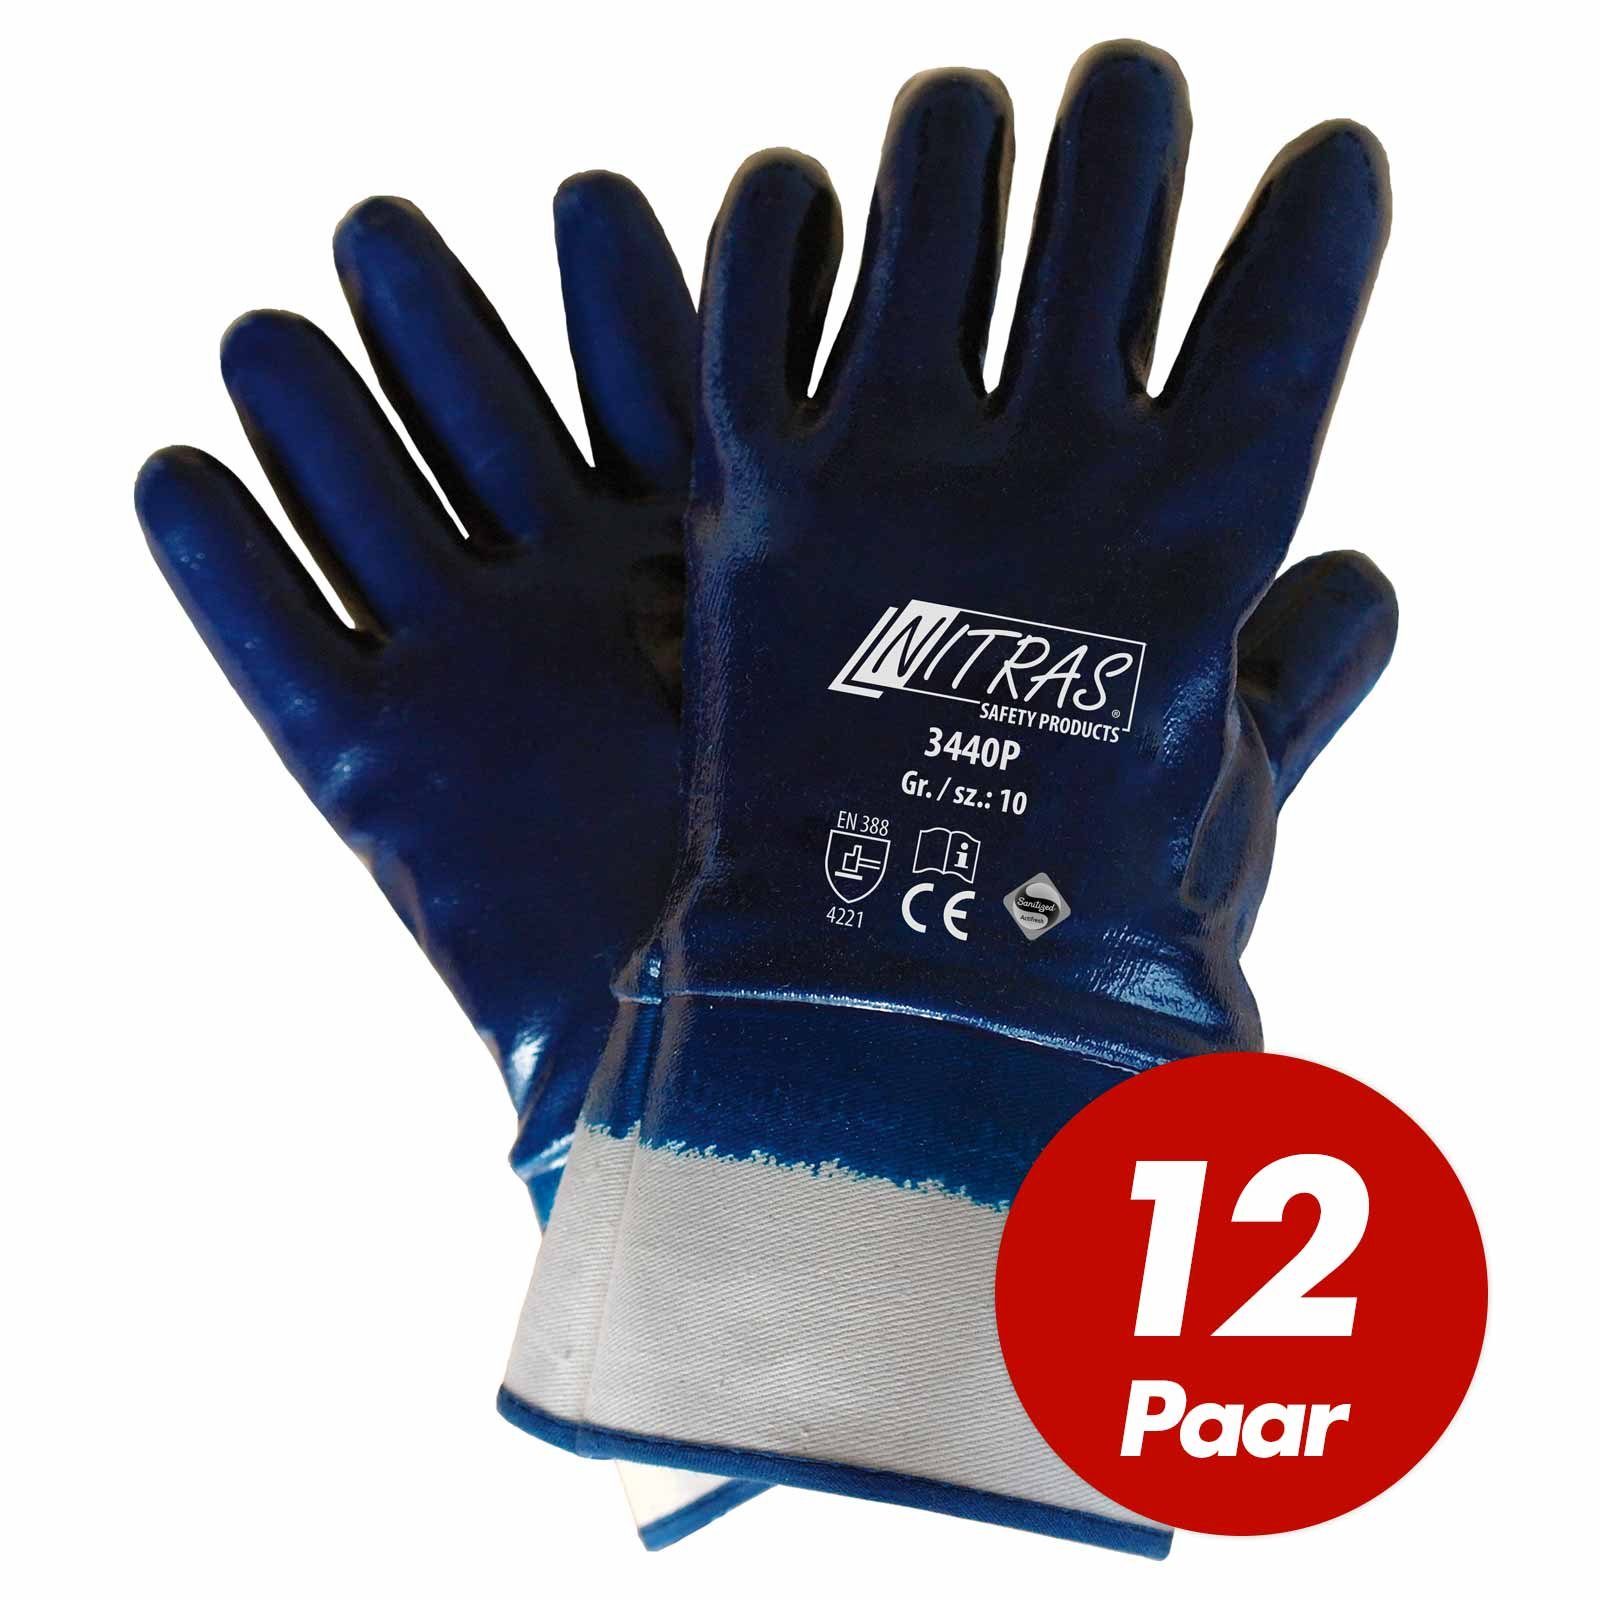 Nitras Nitril-Handschuhe Nitras Nitrilhandschuh Premium 3440P vollbeschichtet - VPE 12 Paar (Spar-Set)